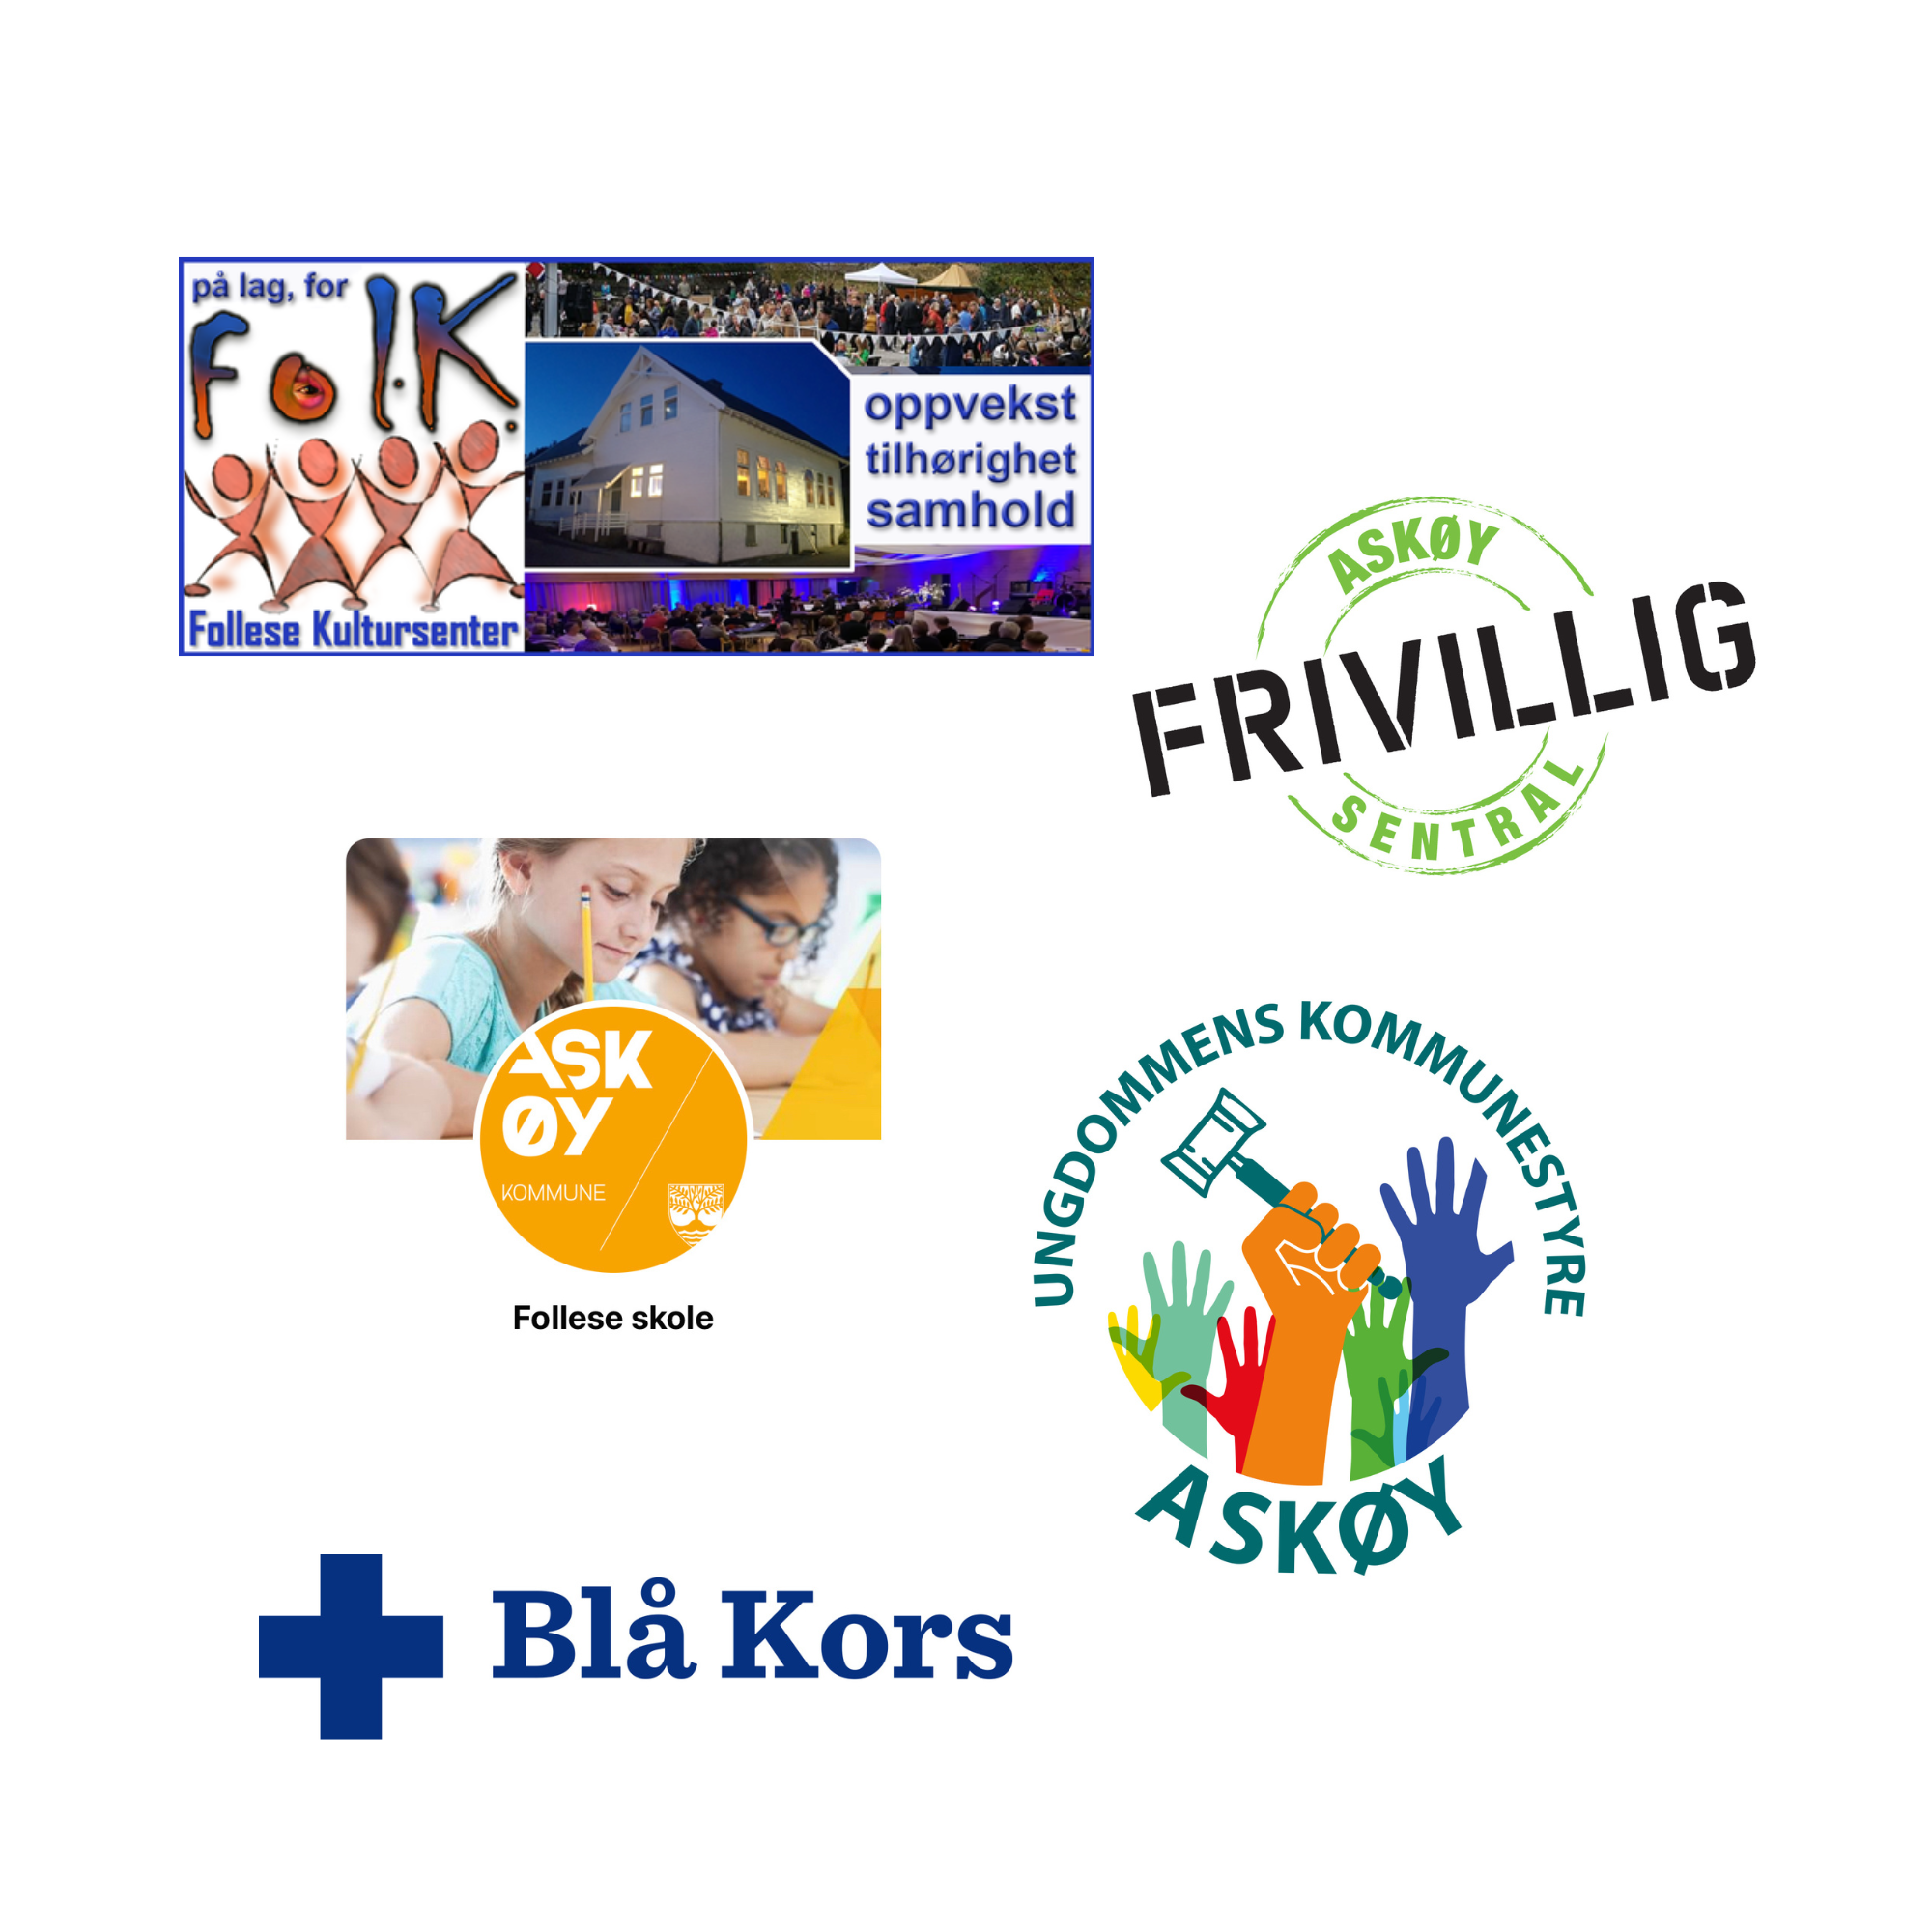 Et bilde som viser 5 logoer. Logoene er fra Follese kultursenter, Askøy frivilligsentral, Follese skole, Ungdommens kommunestyre Askøy og Blå kors.